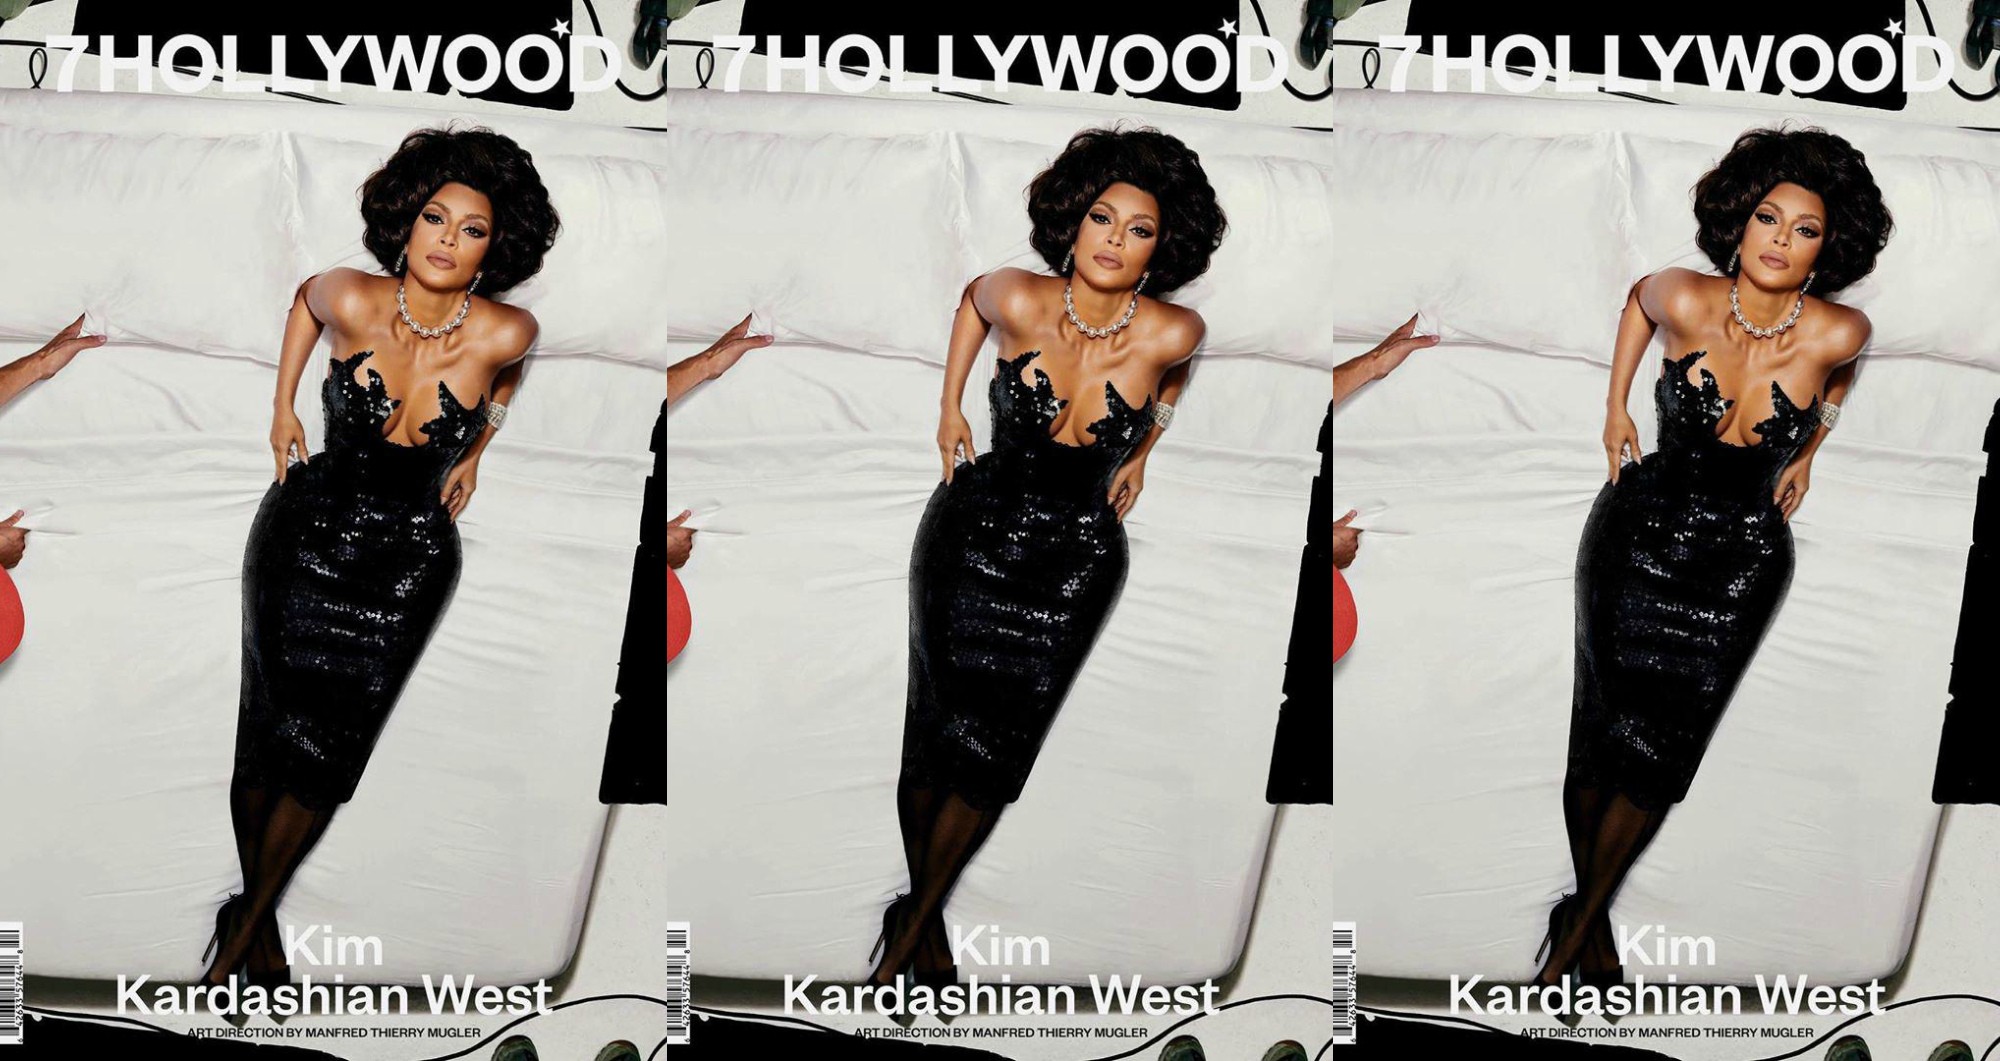 Ким Кардашьян раскритиковали за блэкфэйс – причина в обложке для журнала 7Hollywood